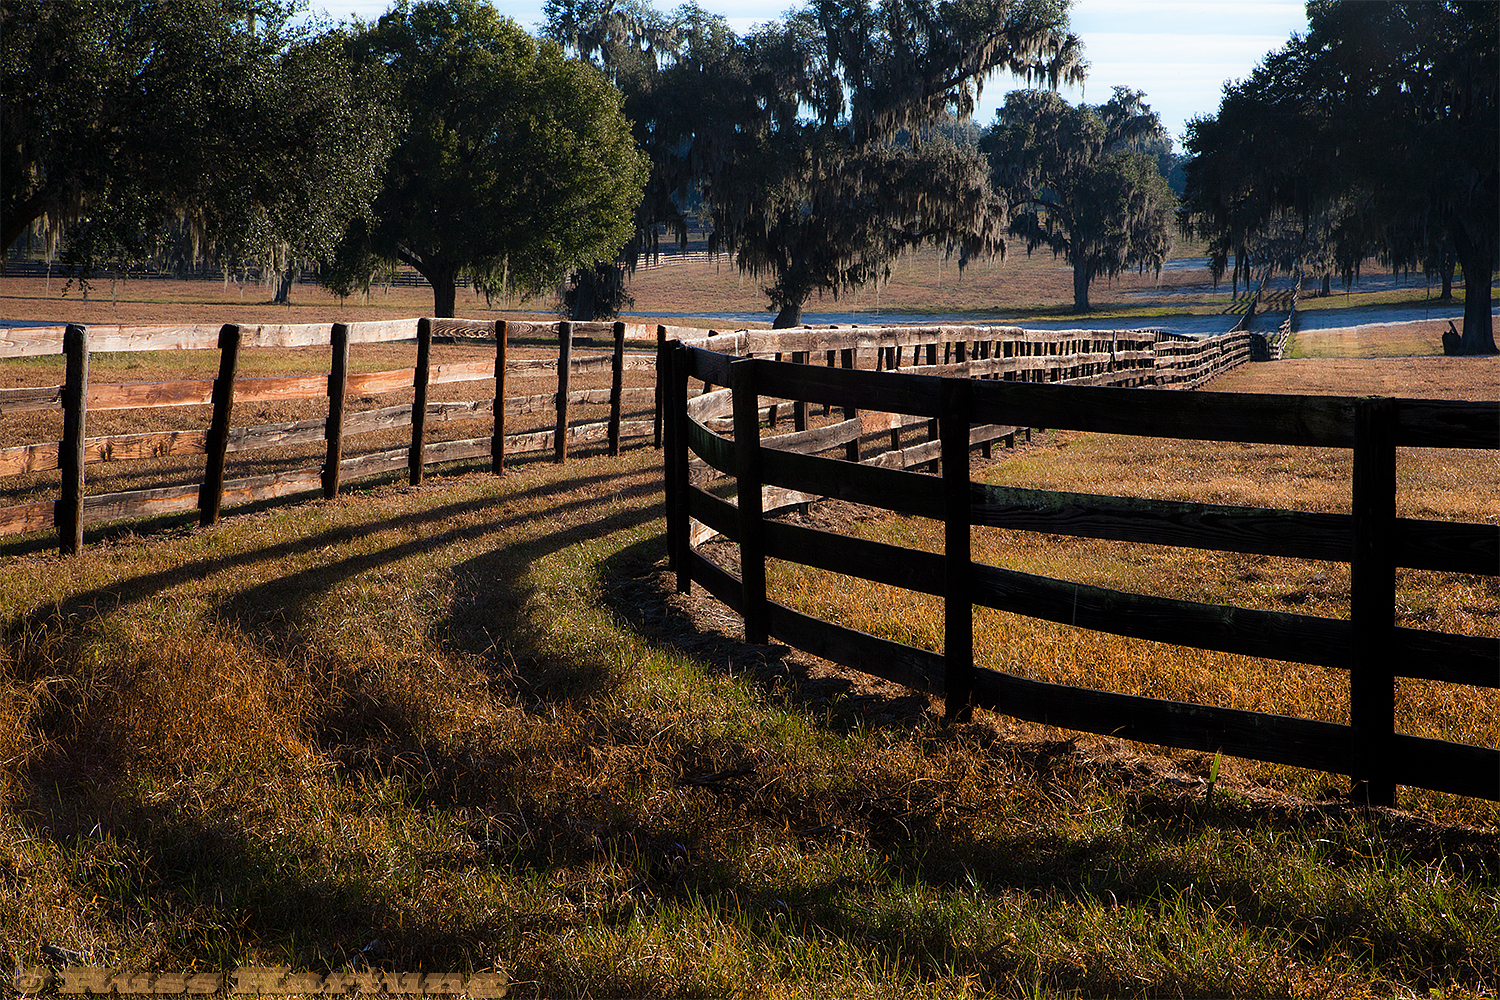 Horse farm in central Florida. 